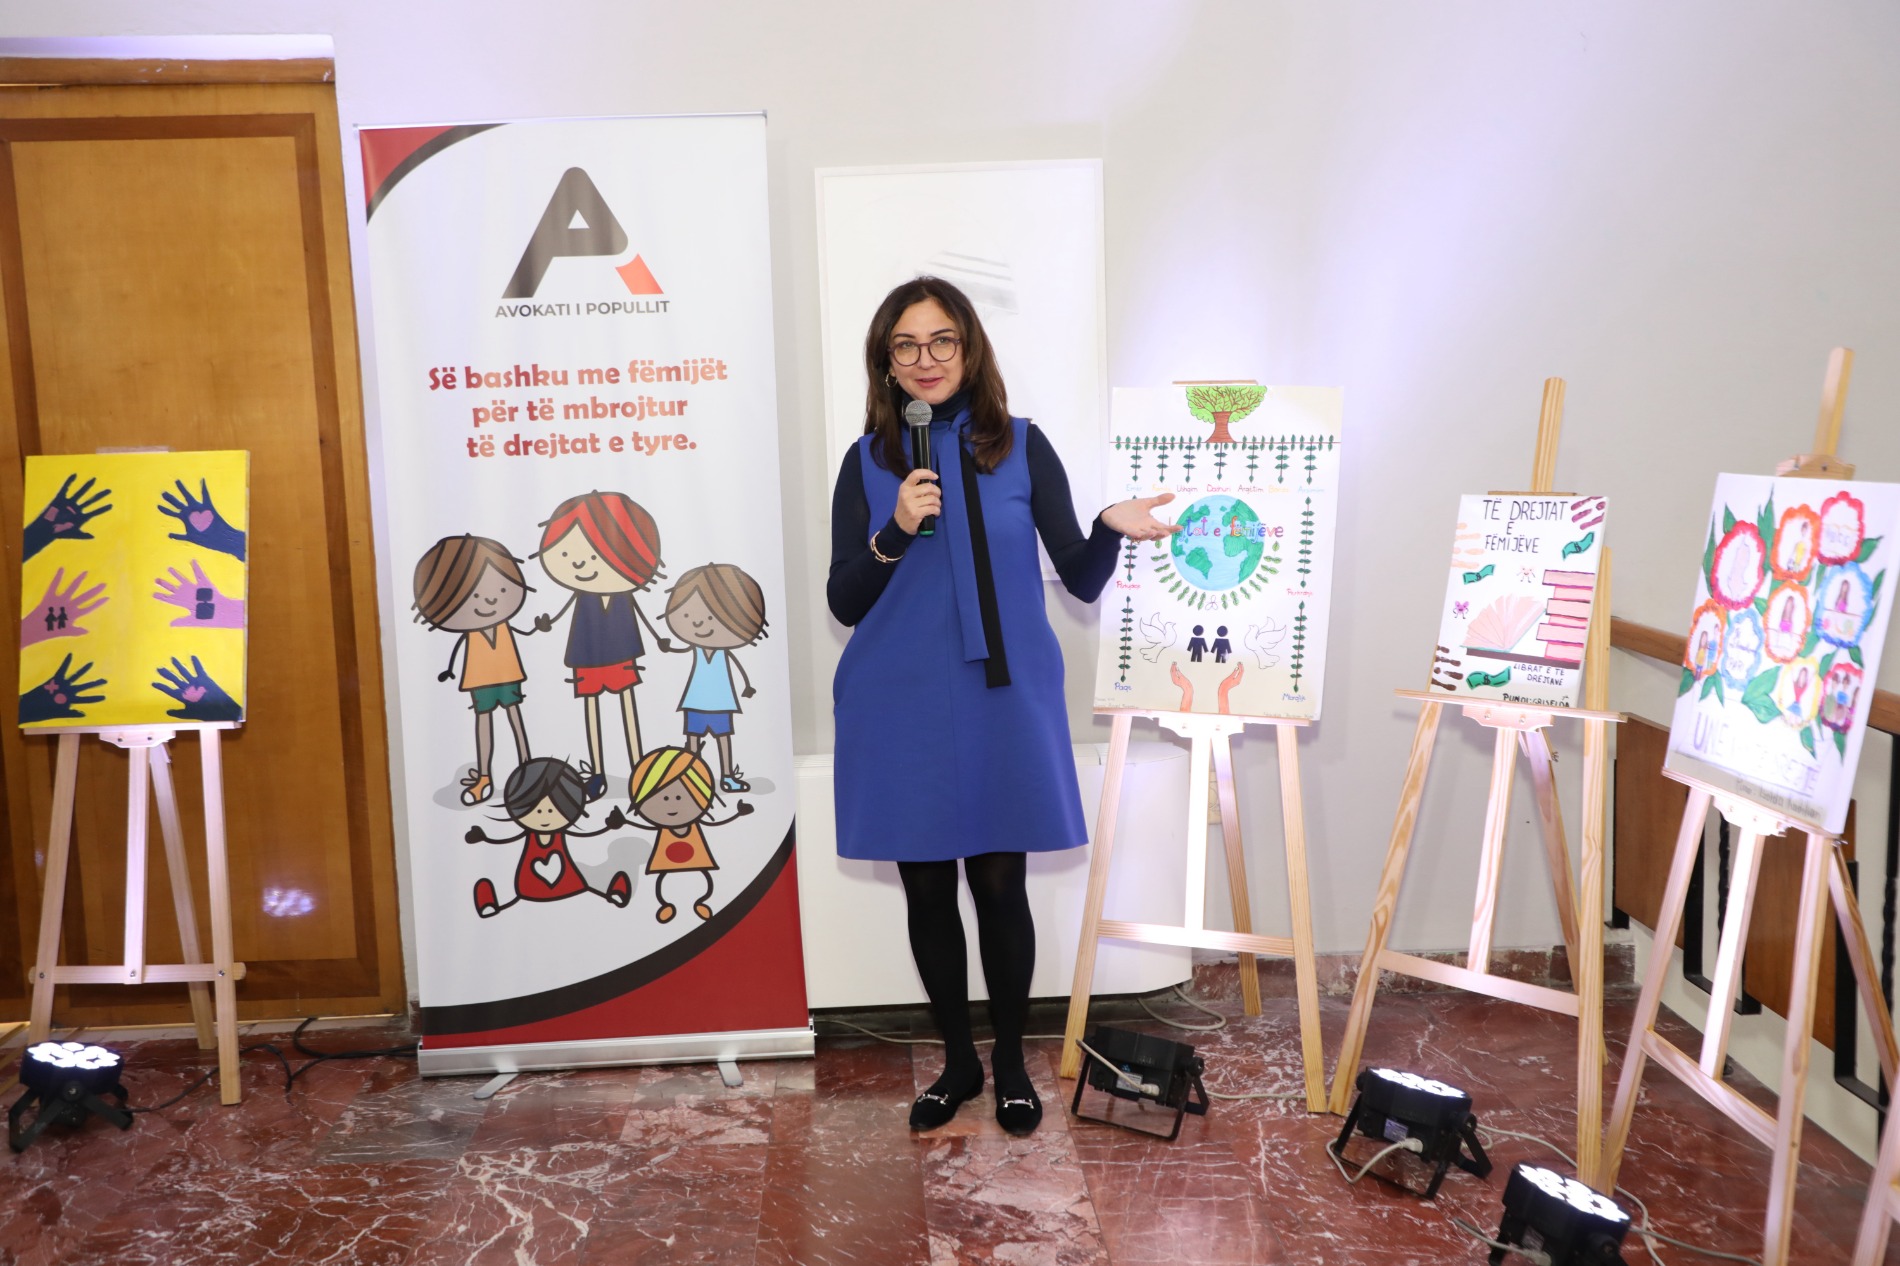 Dita Botërore e Fëmijëve, Avokati i Popullit çel dyert për ekspozitën e veçantë të fëmijëve të shkollës  “Ardian Klosi”